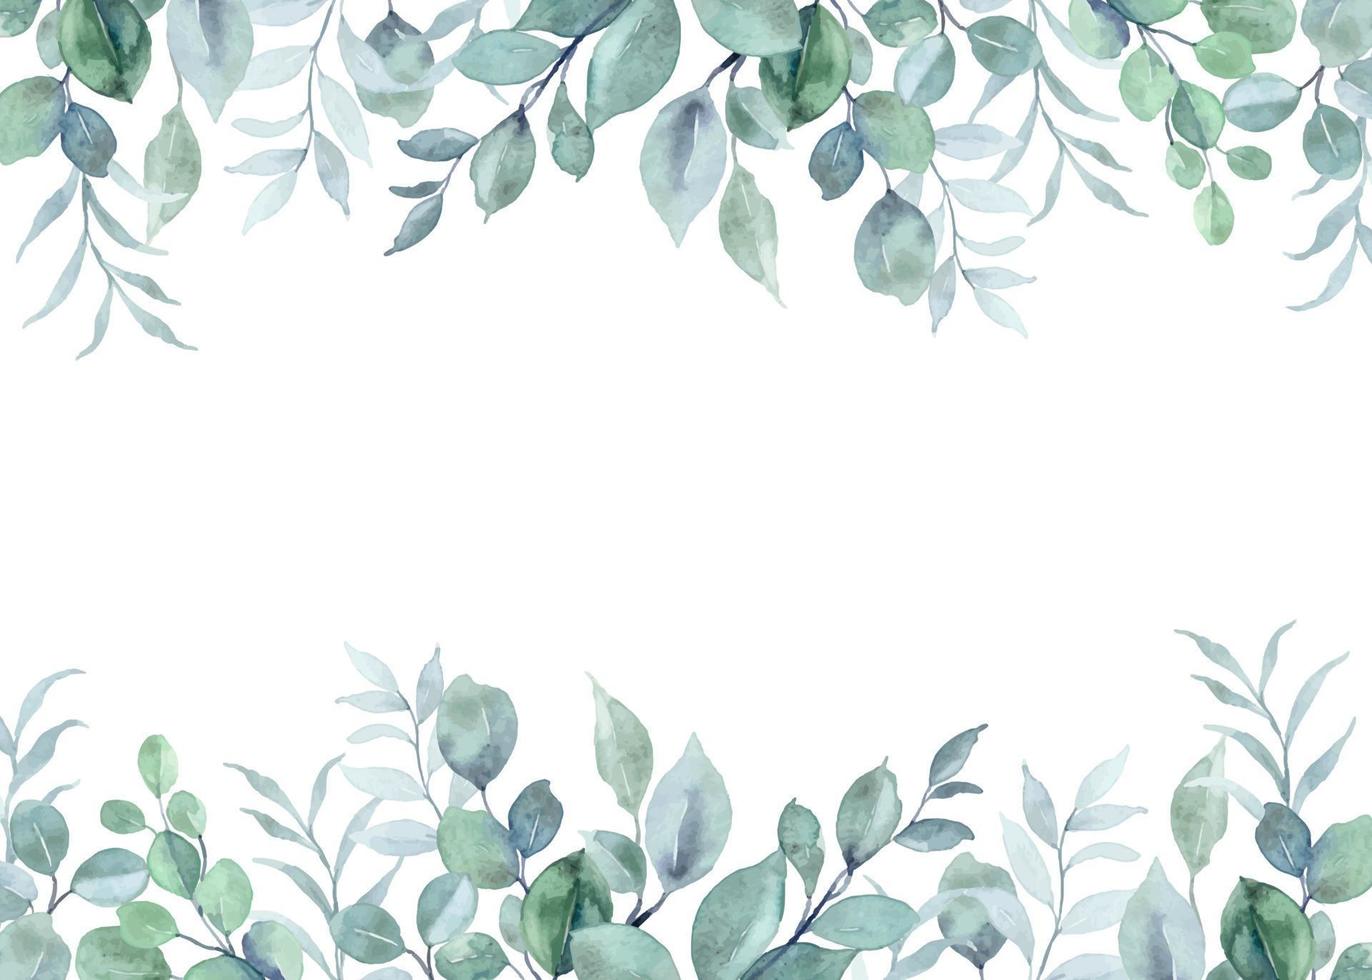 aguarela eucalipto folhas fronteira para casamento, aniversário, cartão, fundo, convite, papel de parede, adesivo, decoração etc. vetor